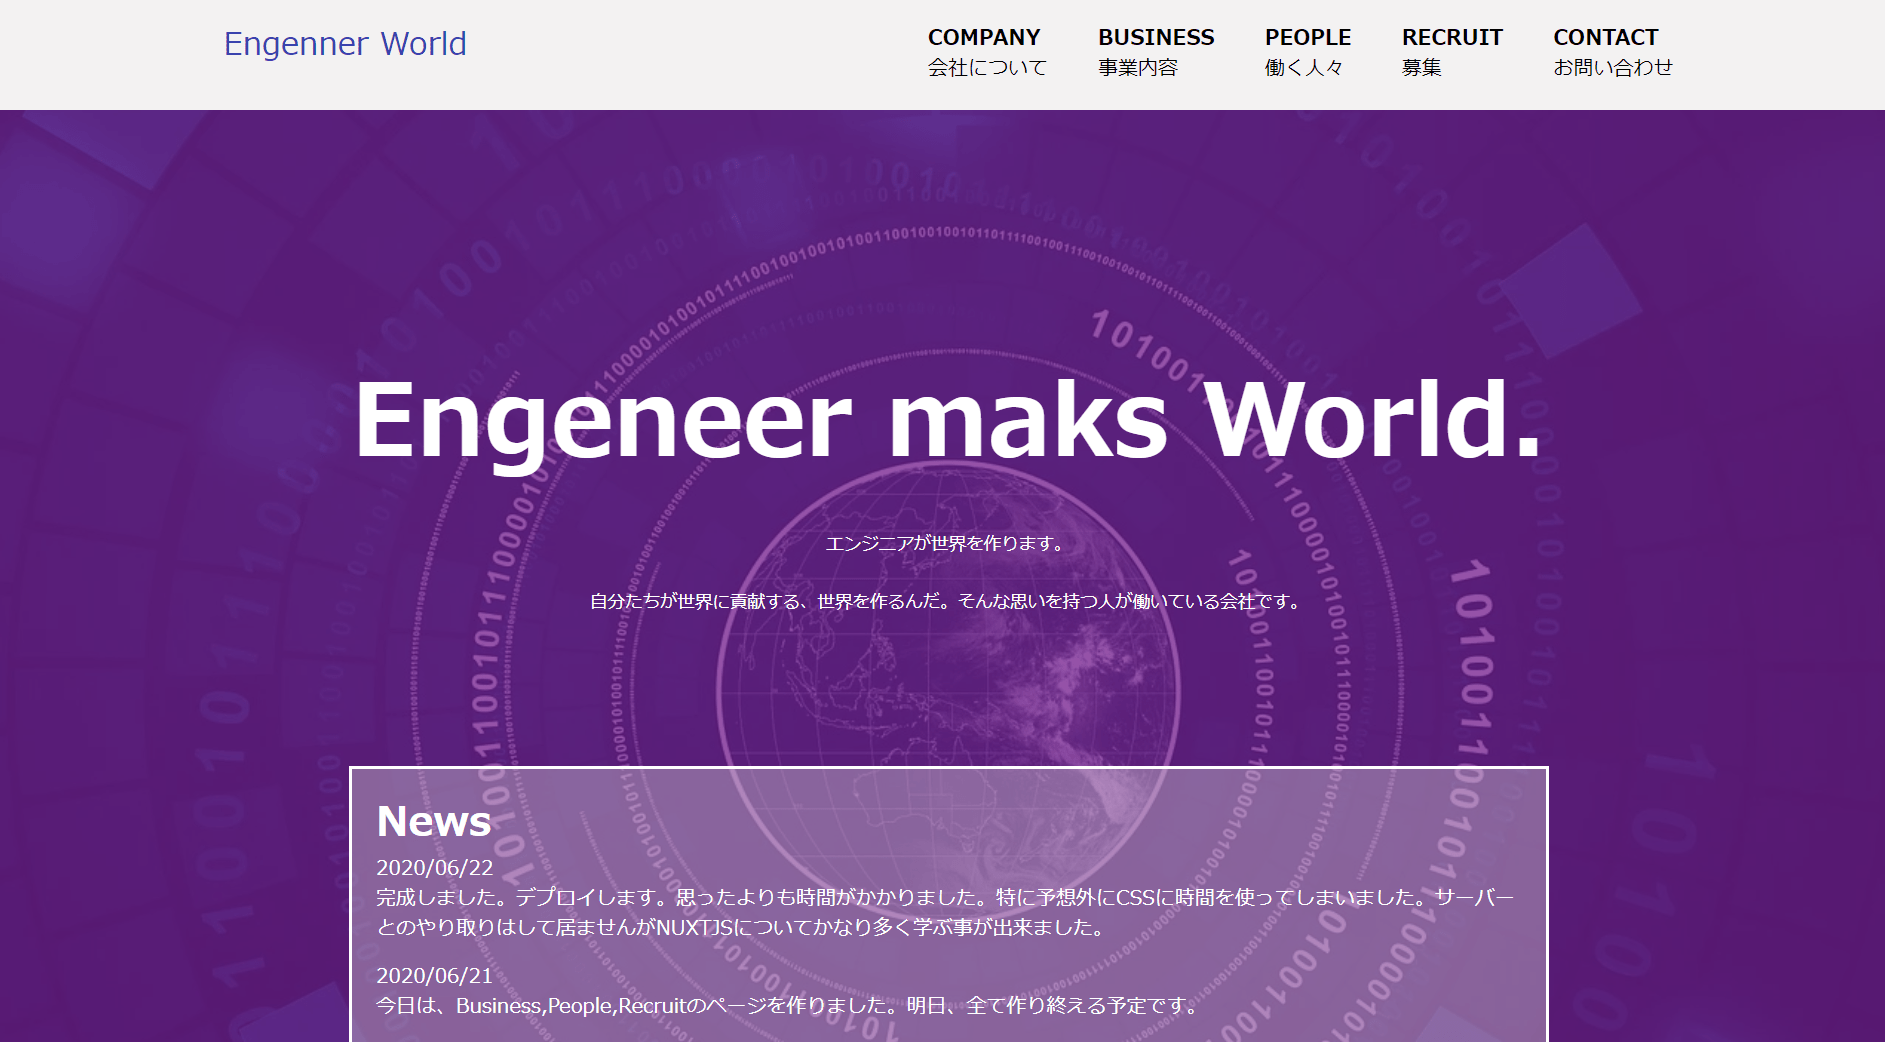 －Engineer World